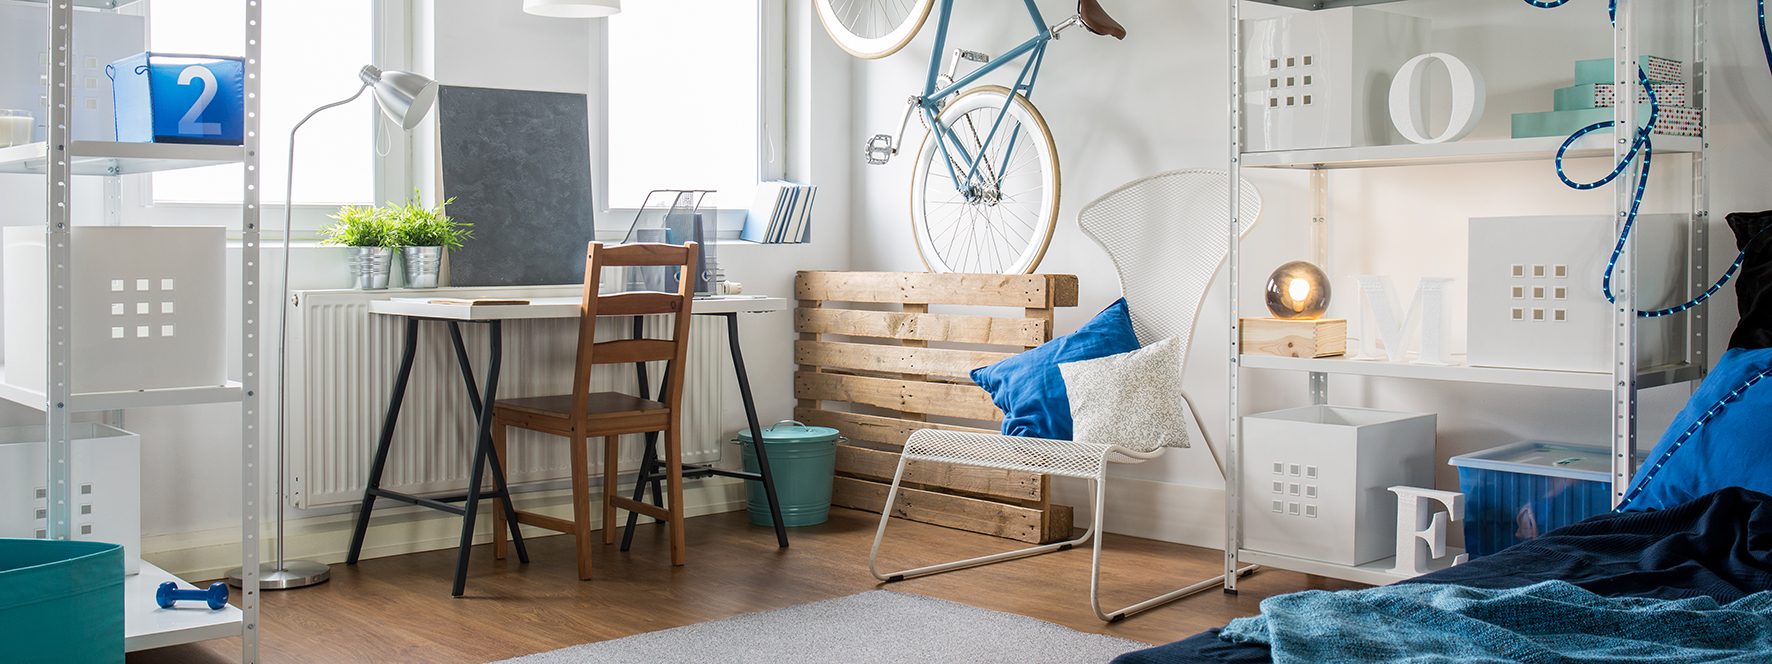 Ett rum med en massa möbler och saker i. På väggen hänger en cykel.